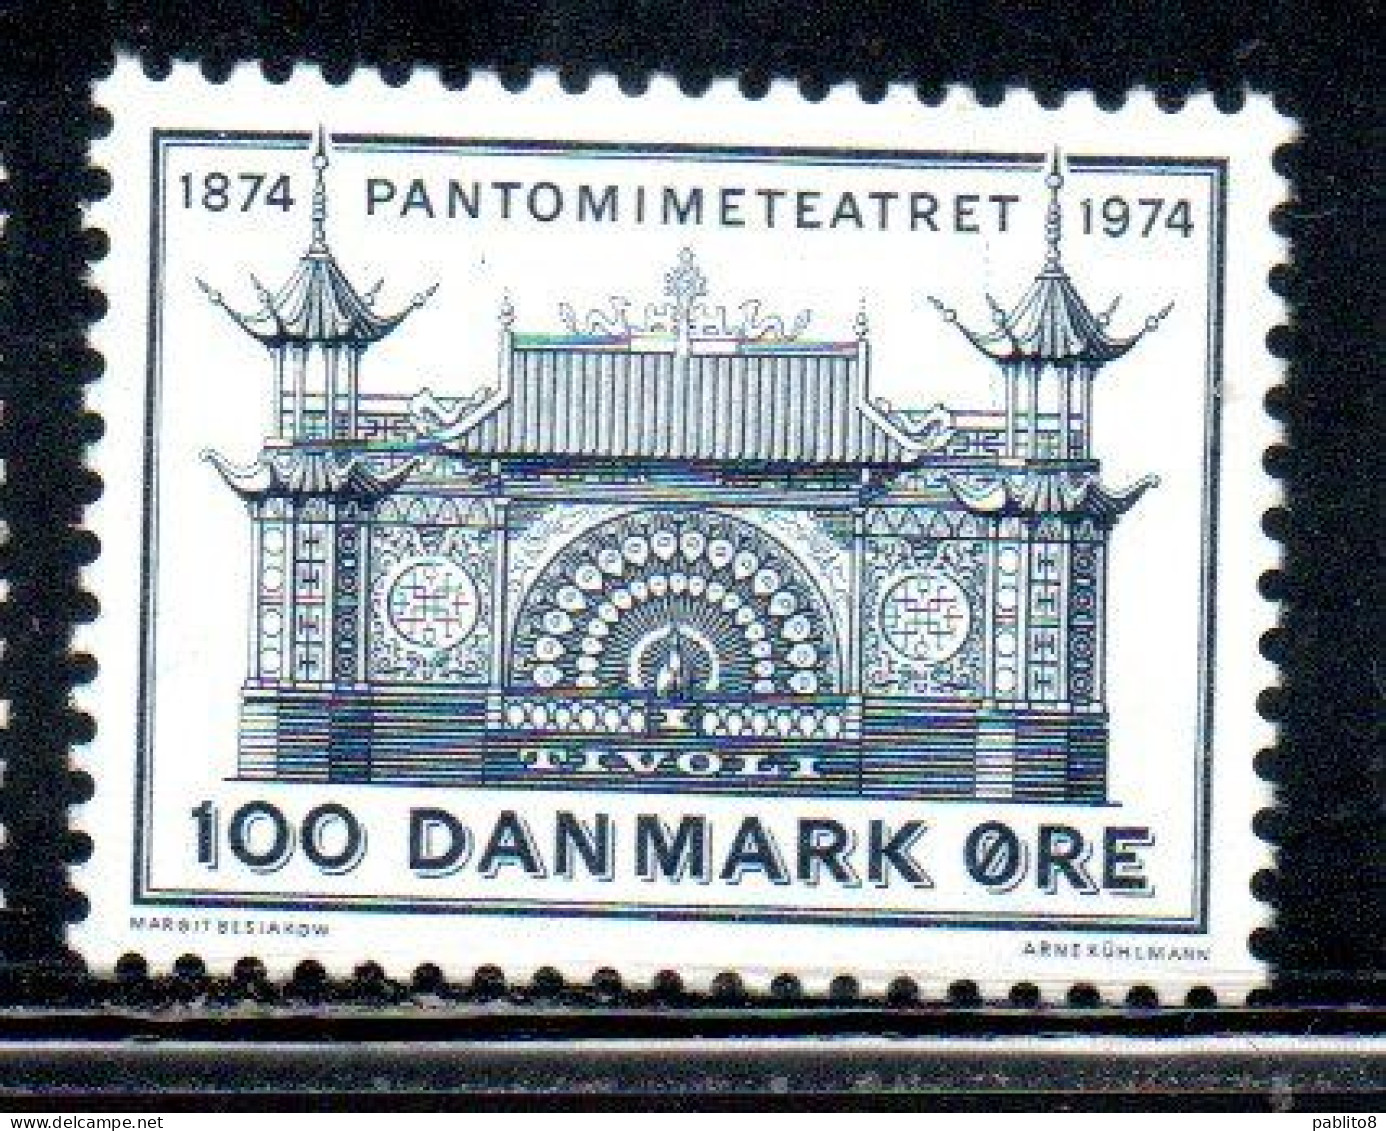 DANEMARK DANMARK DENMARK DANIMARCA 1974 PANTOMIME TEATHER TIVOLI 100o MNH - Neufs